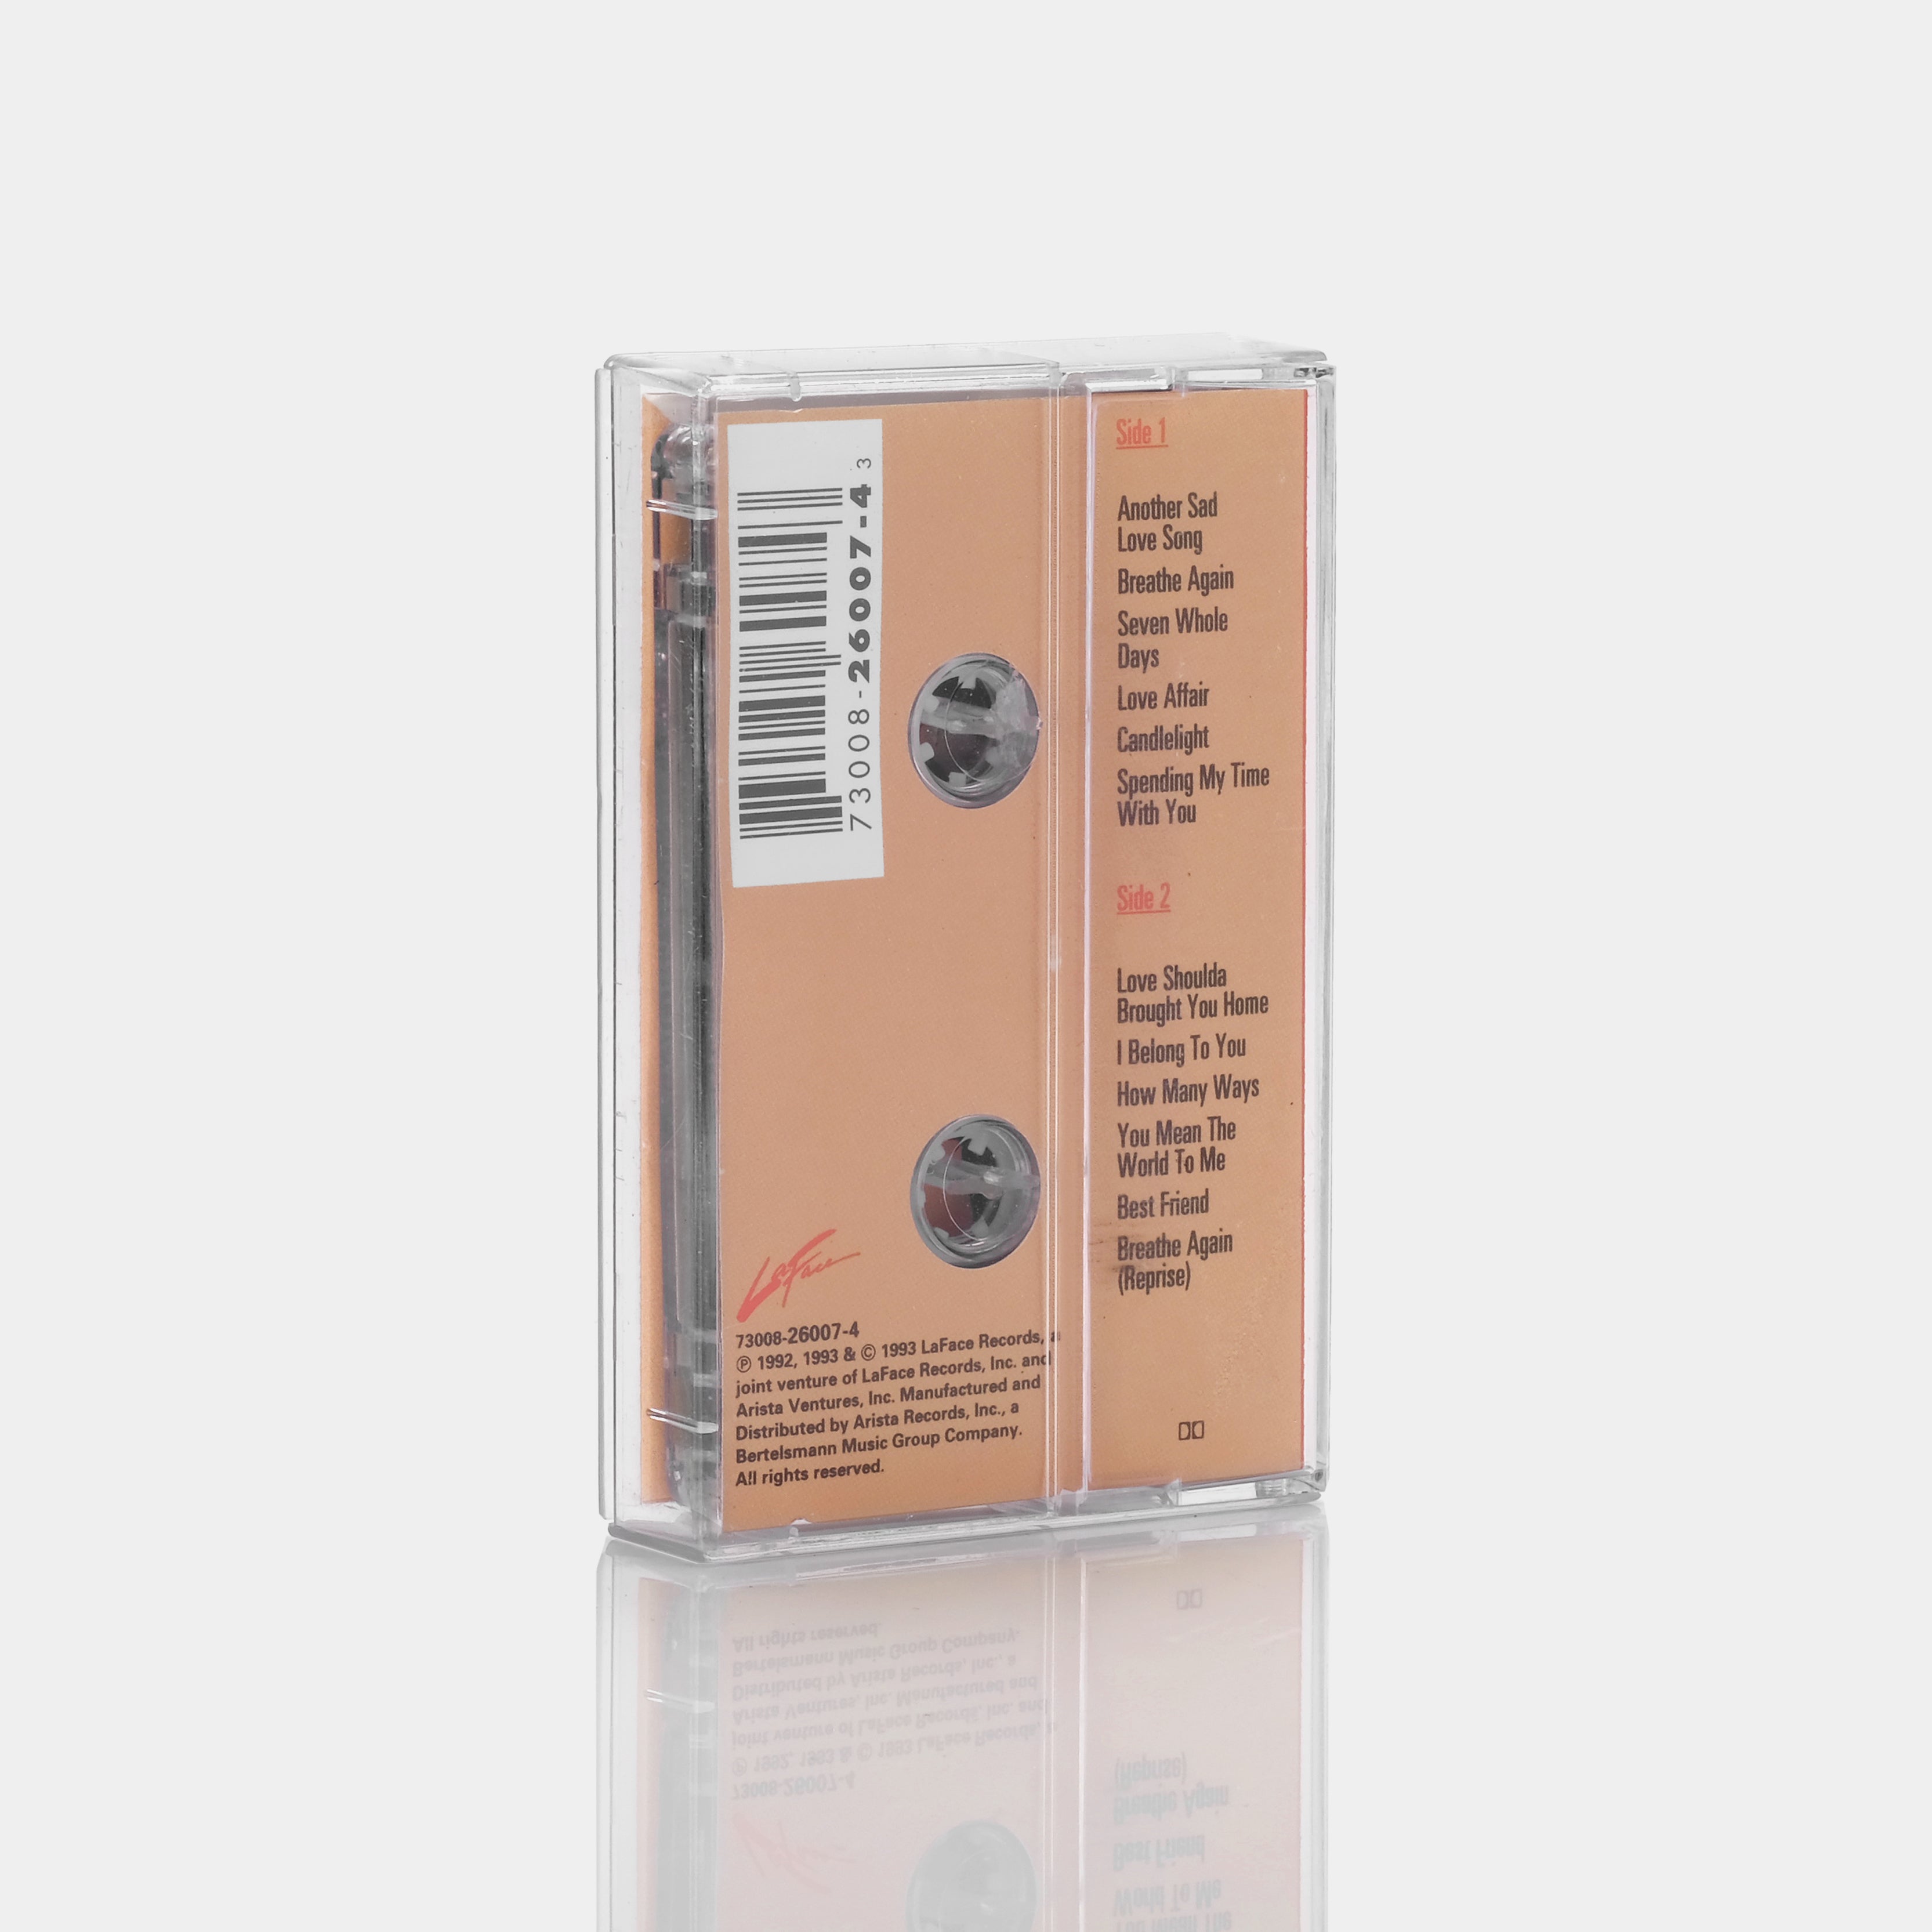 Toni Braxton - Toni Braxton Cassette Tape